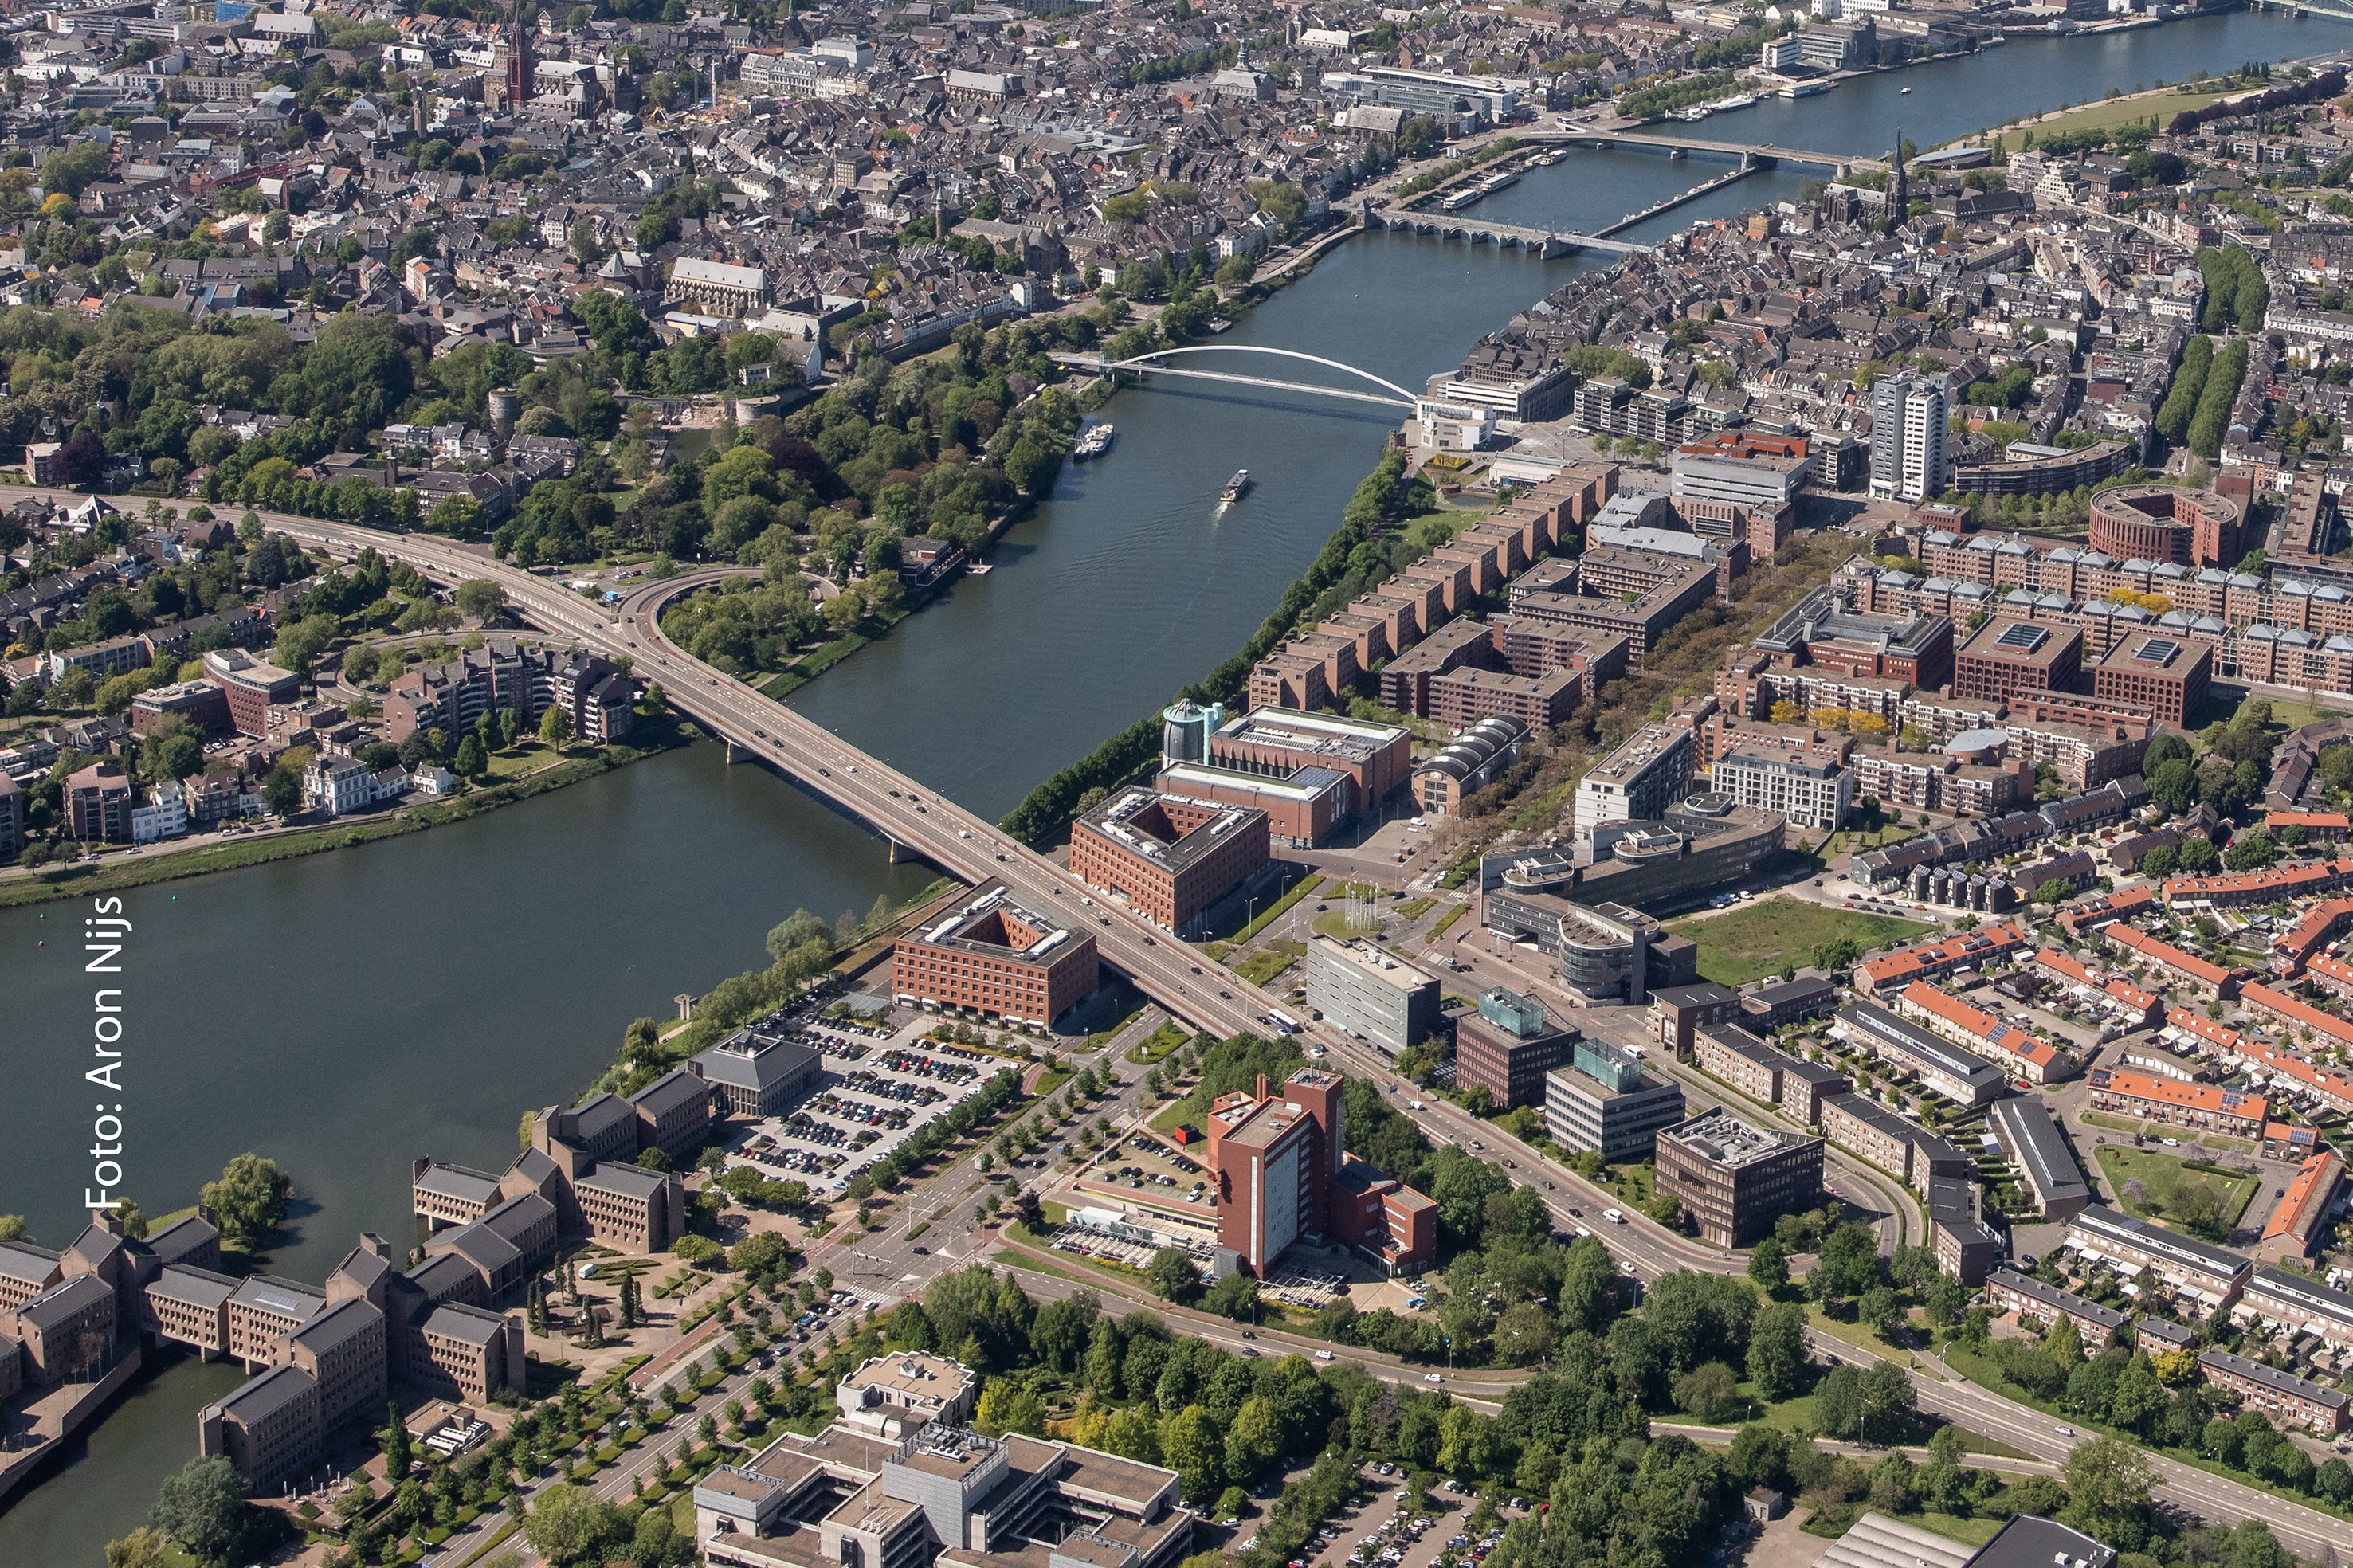 Ruim baan voor (eu)regionaal talent in dé Customer Service stad: Maastricht